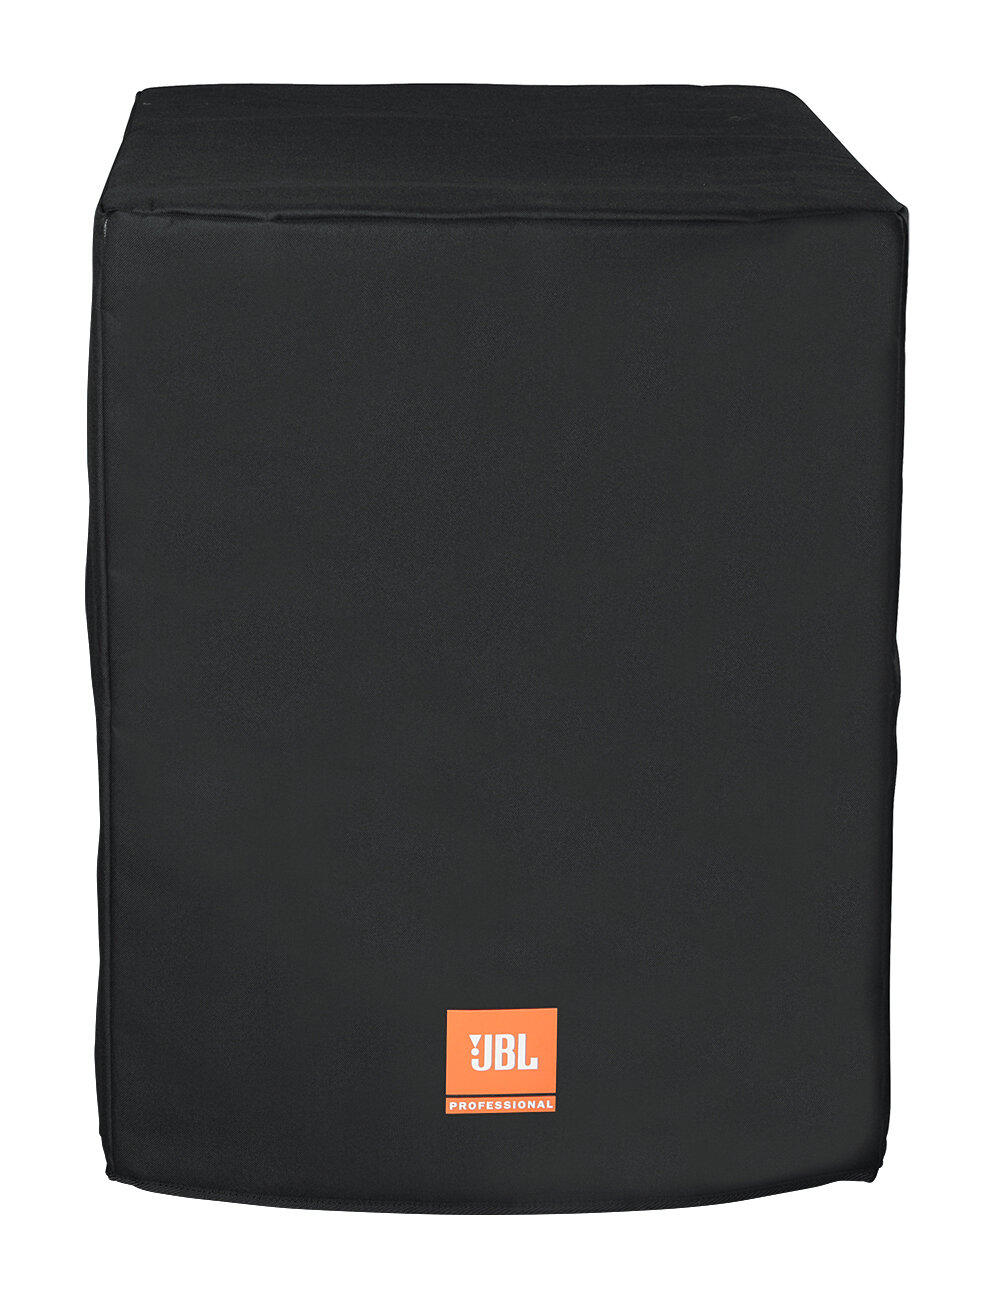 JBL BAGS Deluxe Padded Cover for PRX818XLF Speaker (Black)
#JBPRX818XLF MFR #PRX818XLFW-CVR